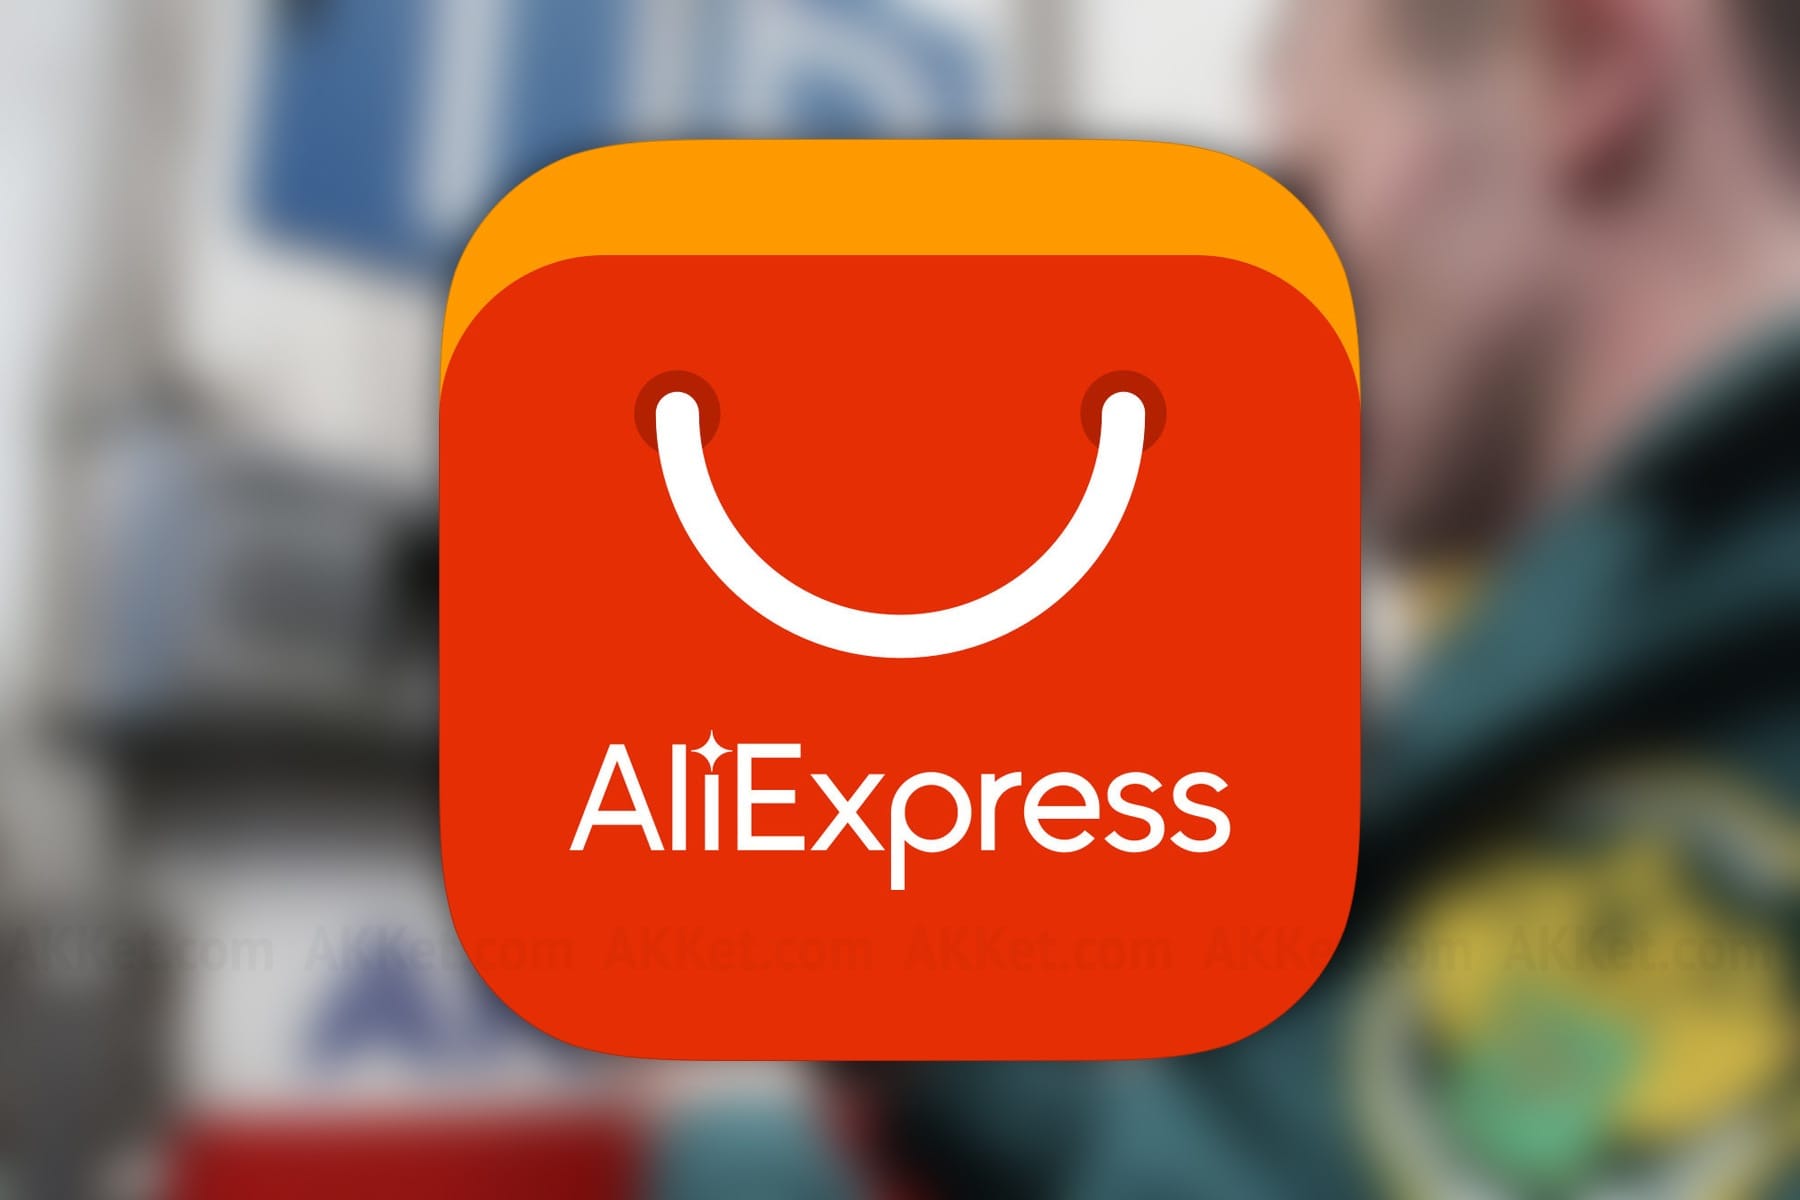 "Новая почта" возобновляет доставку с AliExpress